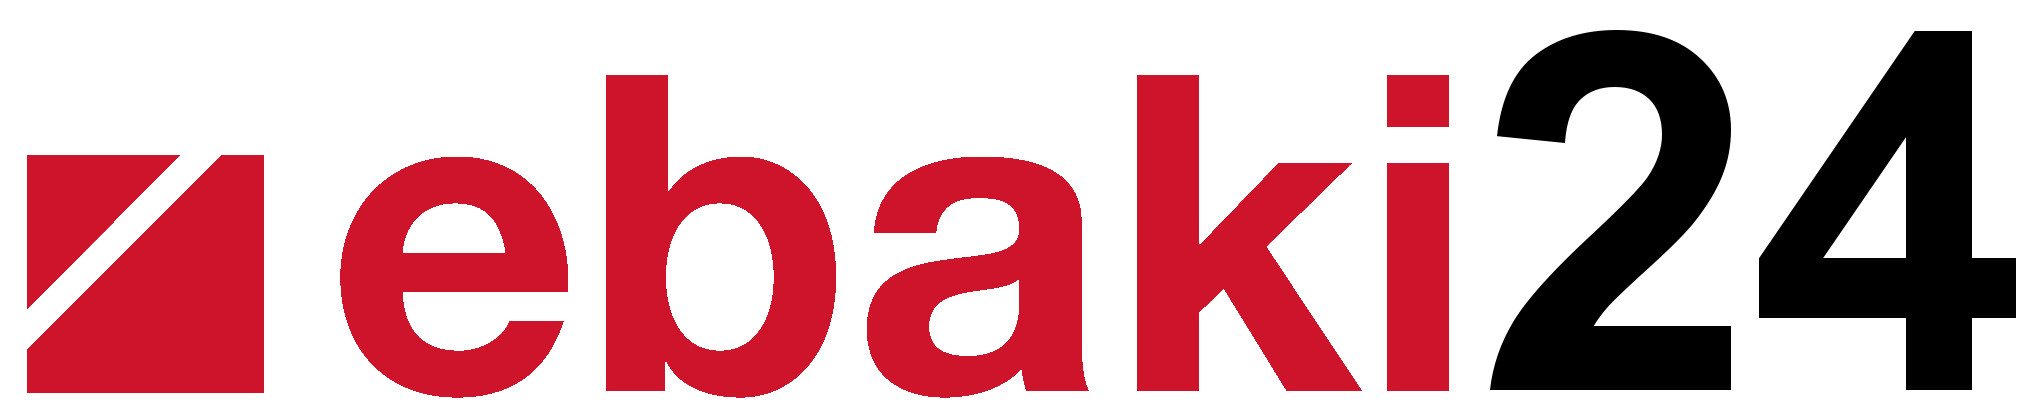 ebaki24 logo